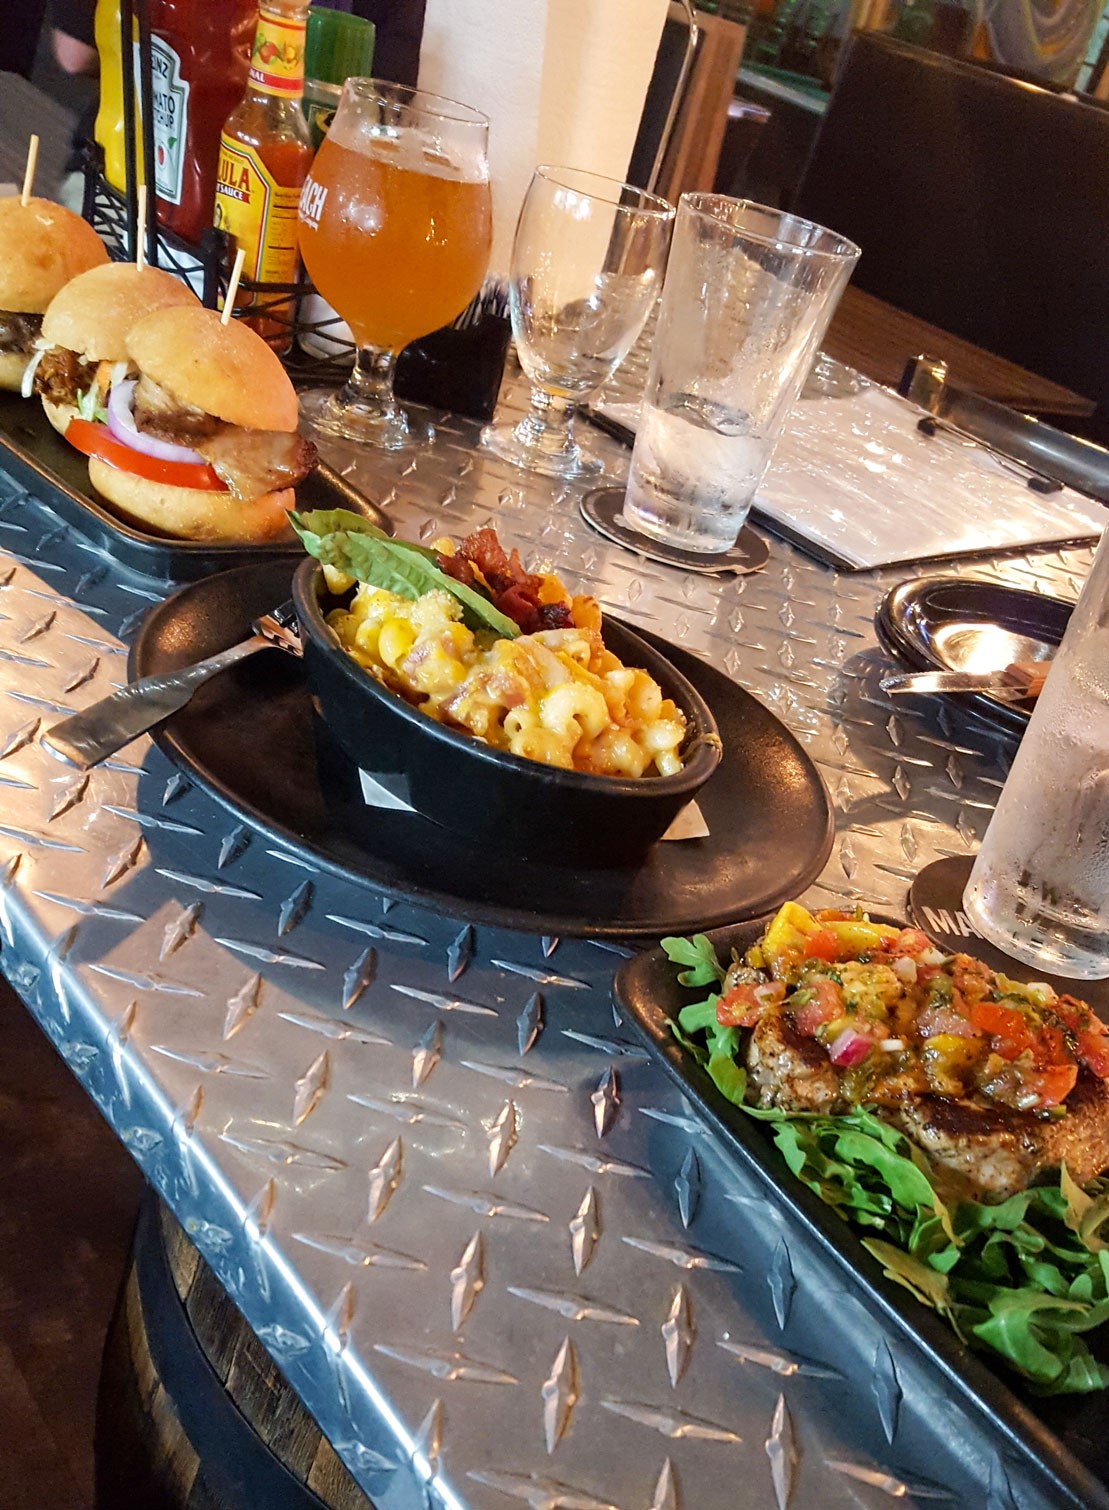 Burger, Mac and Cheese at Mad Beach